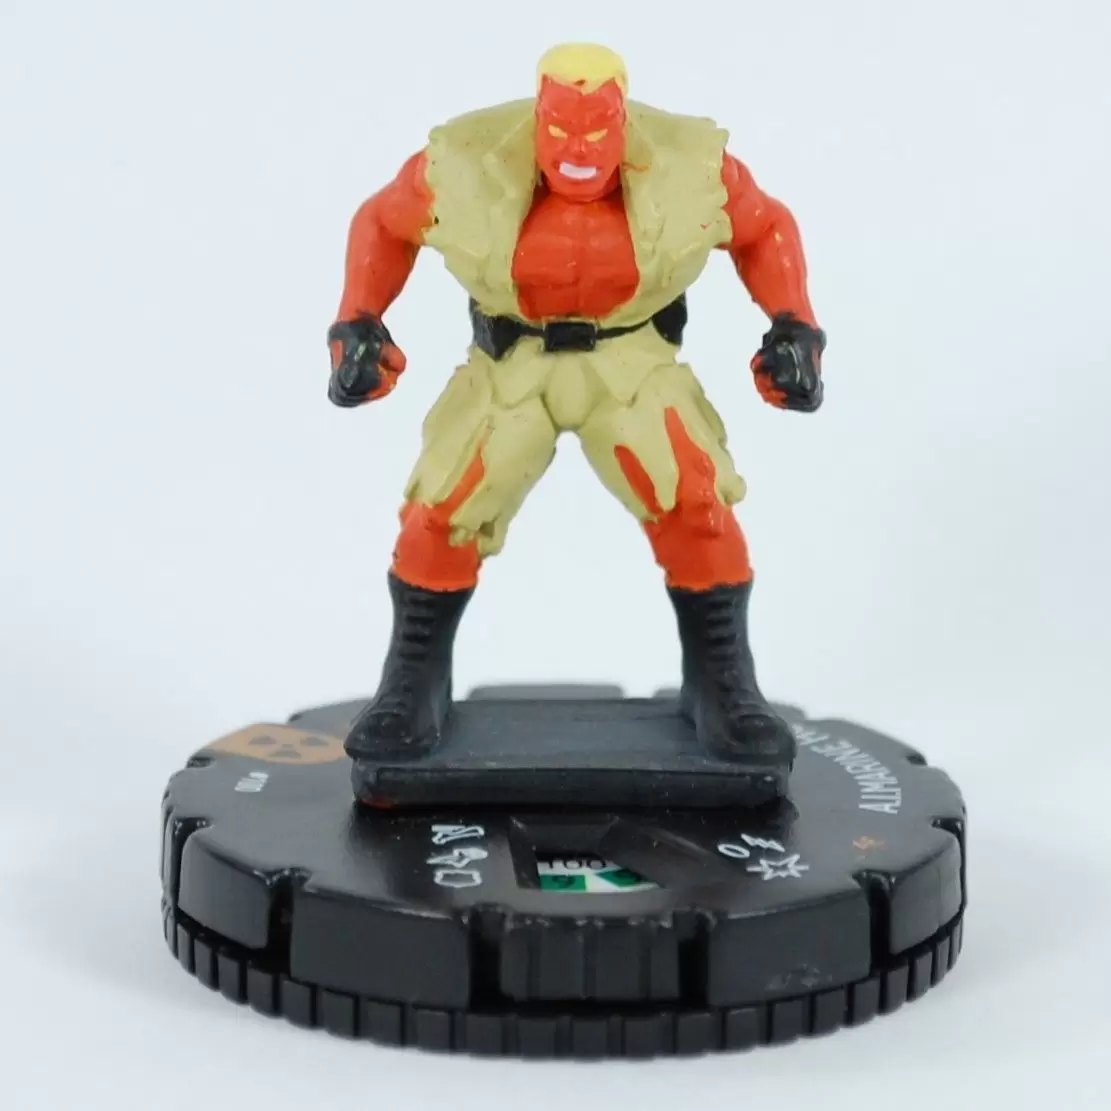 Incredible Hulk - A.I.Marine Hulk